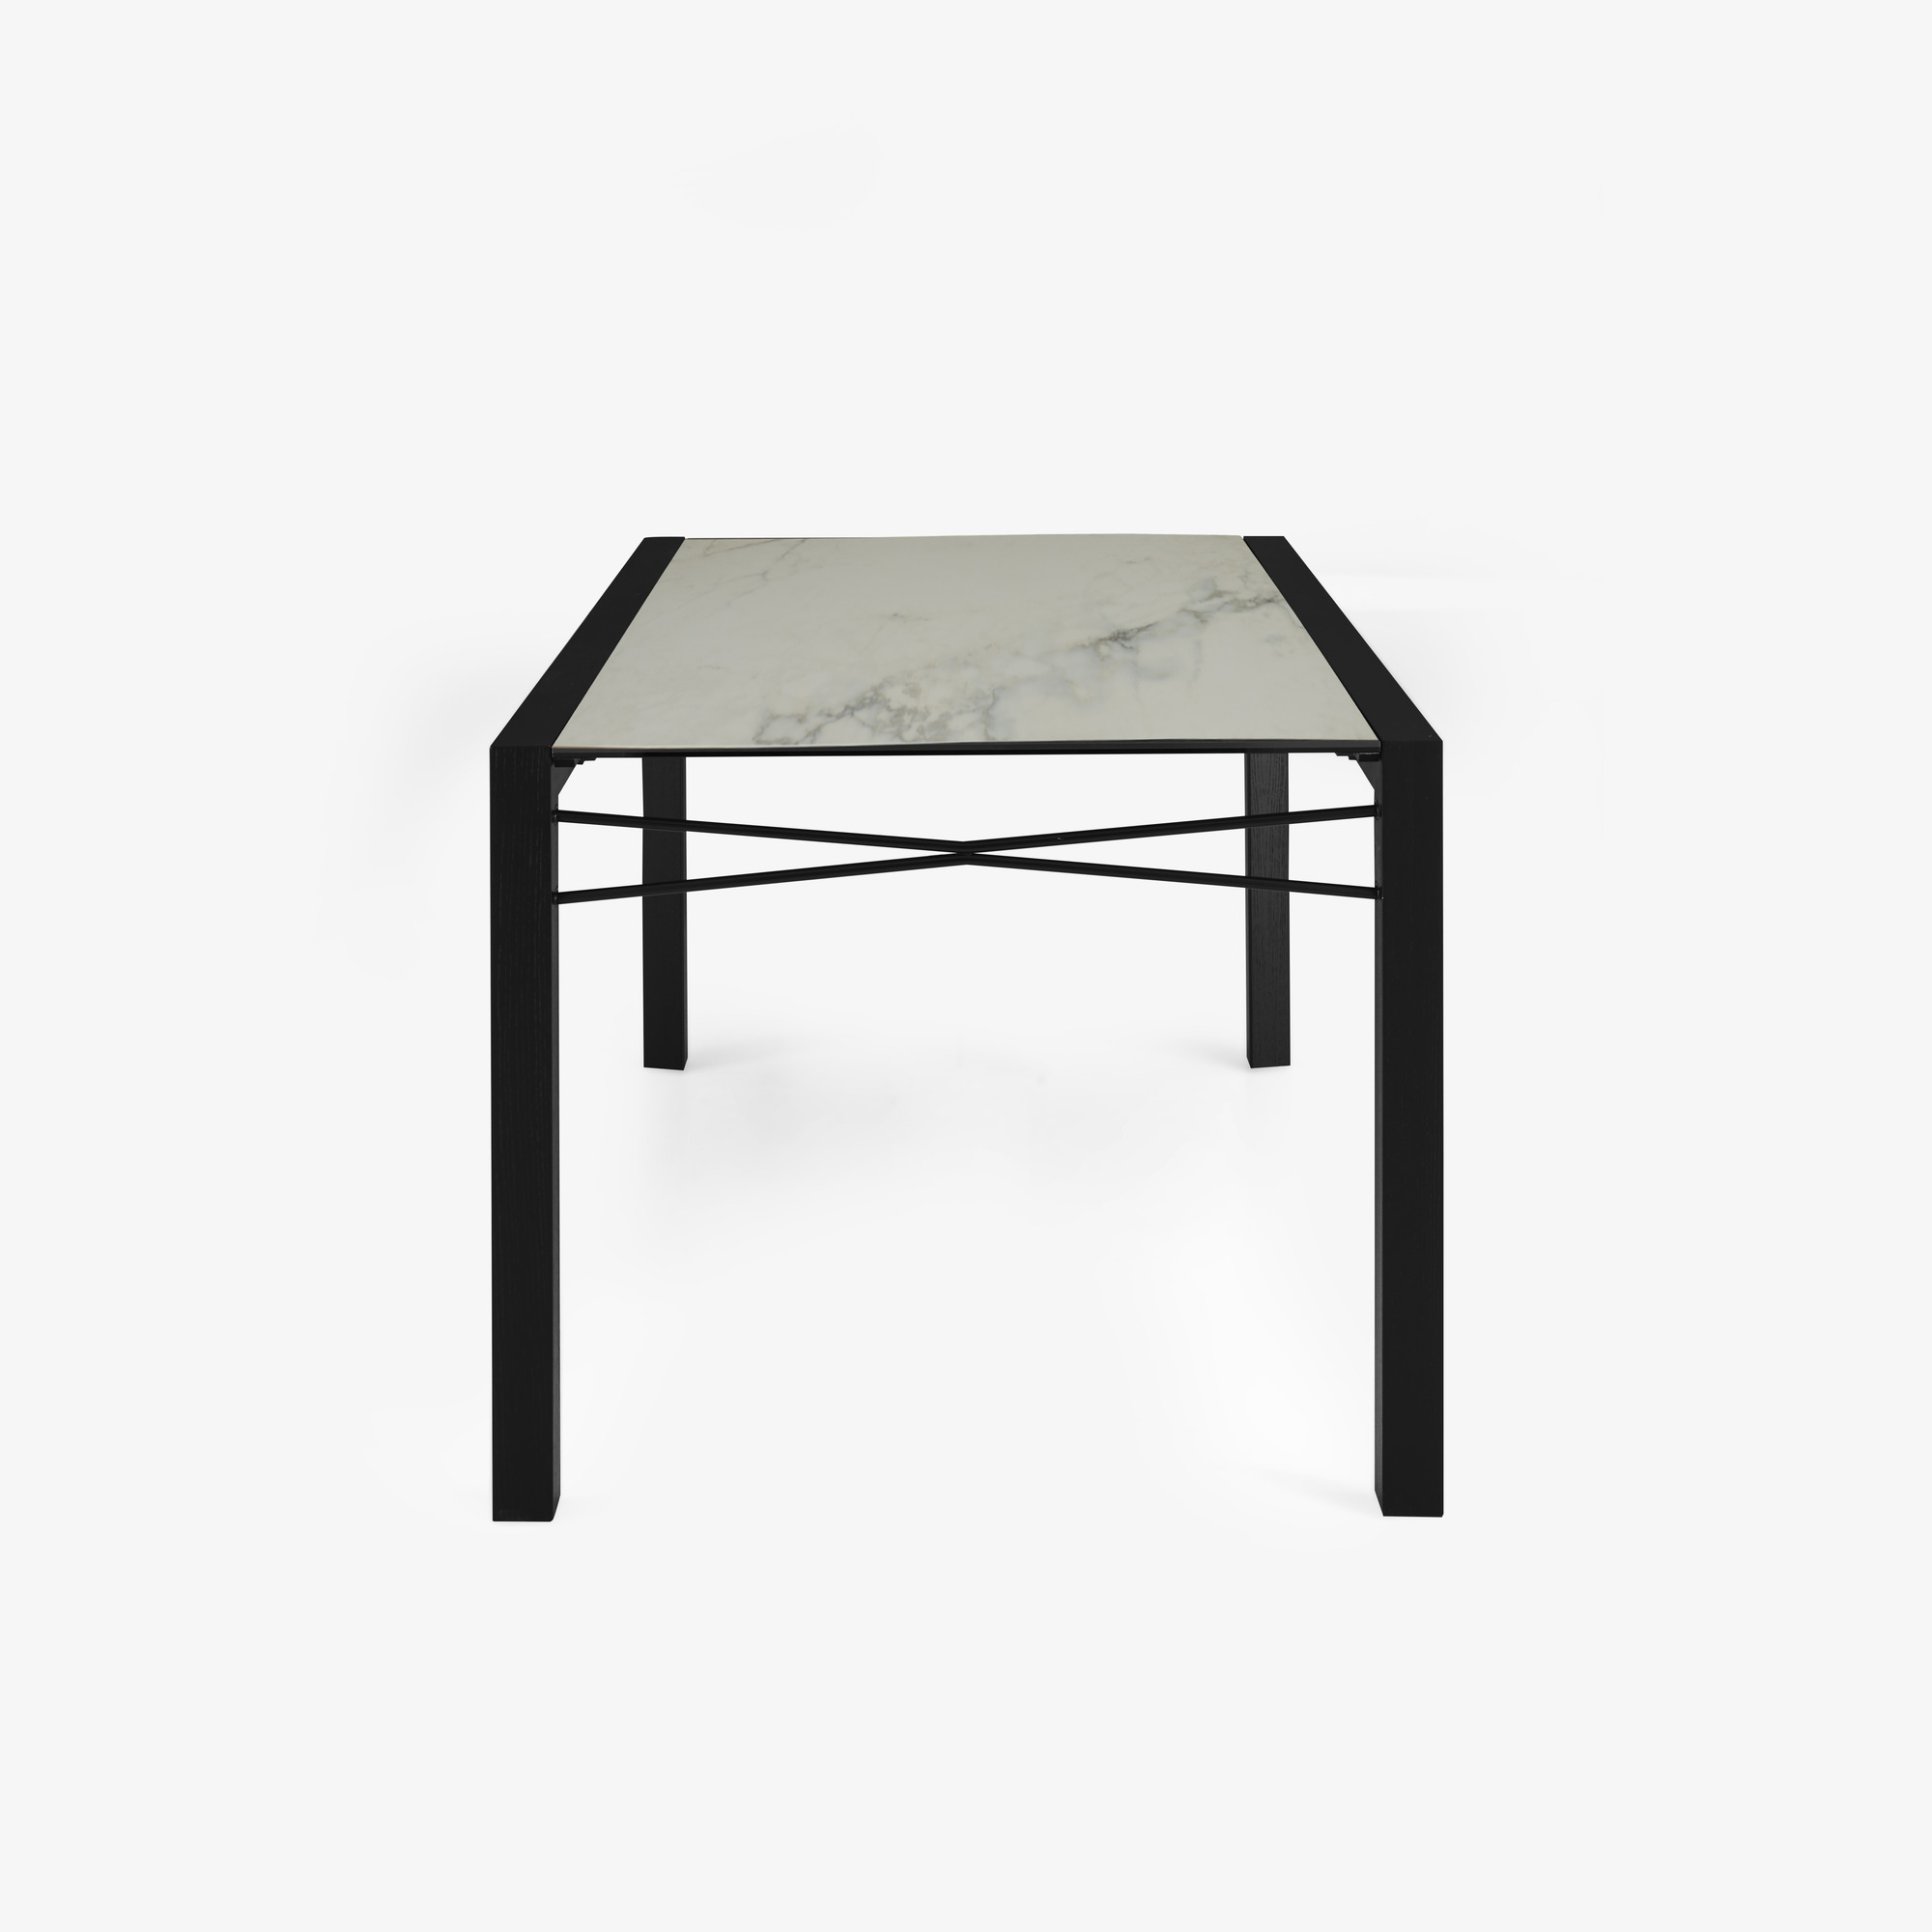 Image Mesa de comedor tablero gres cerámico aspecto mármol blanco patas de fresno teñido negro 3